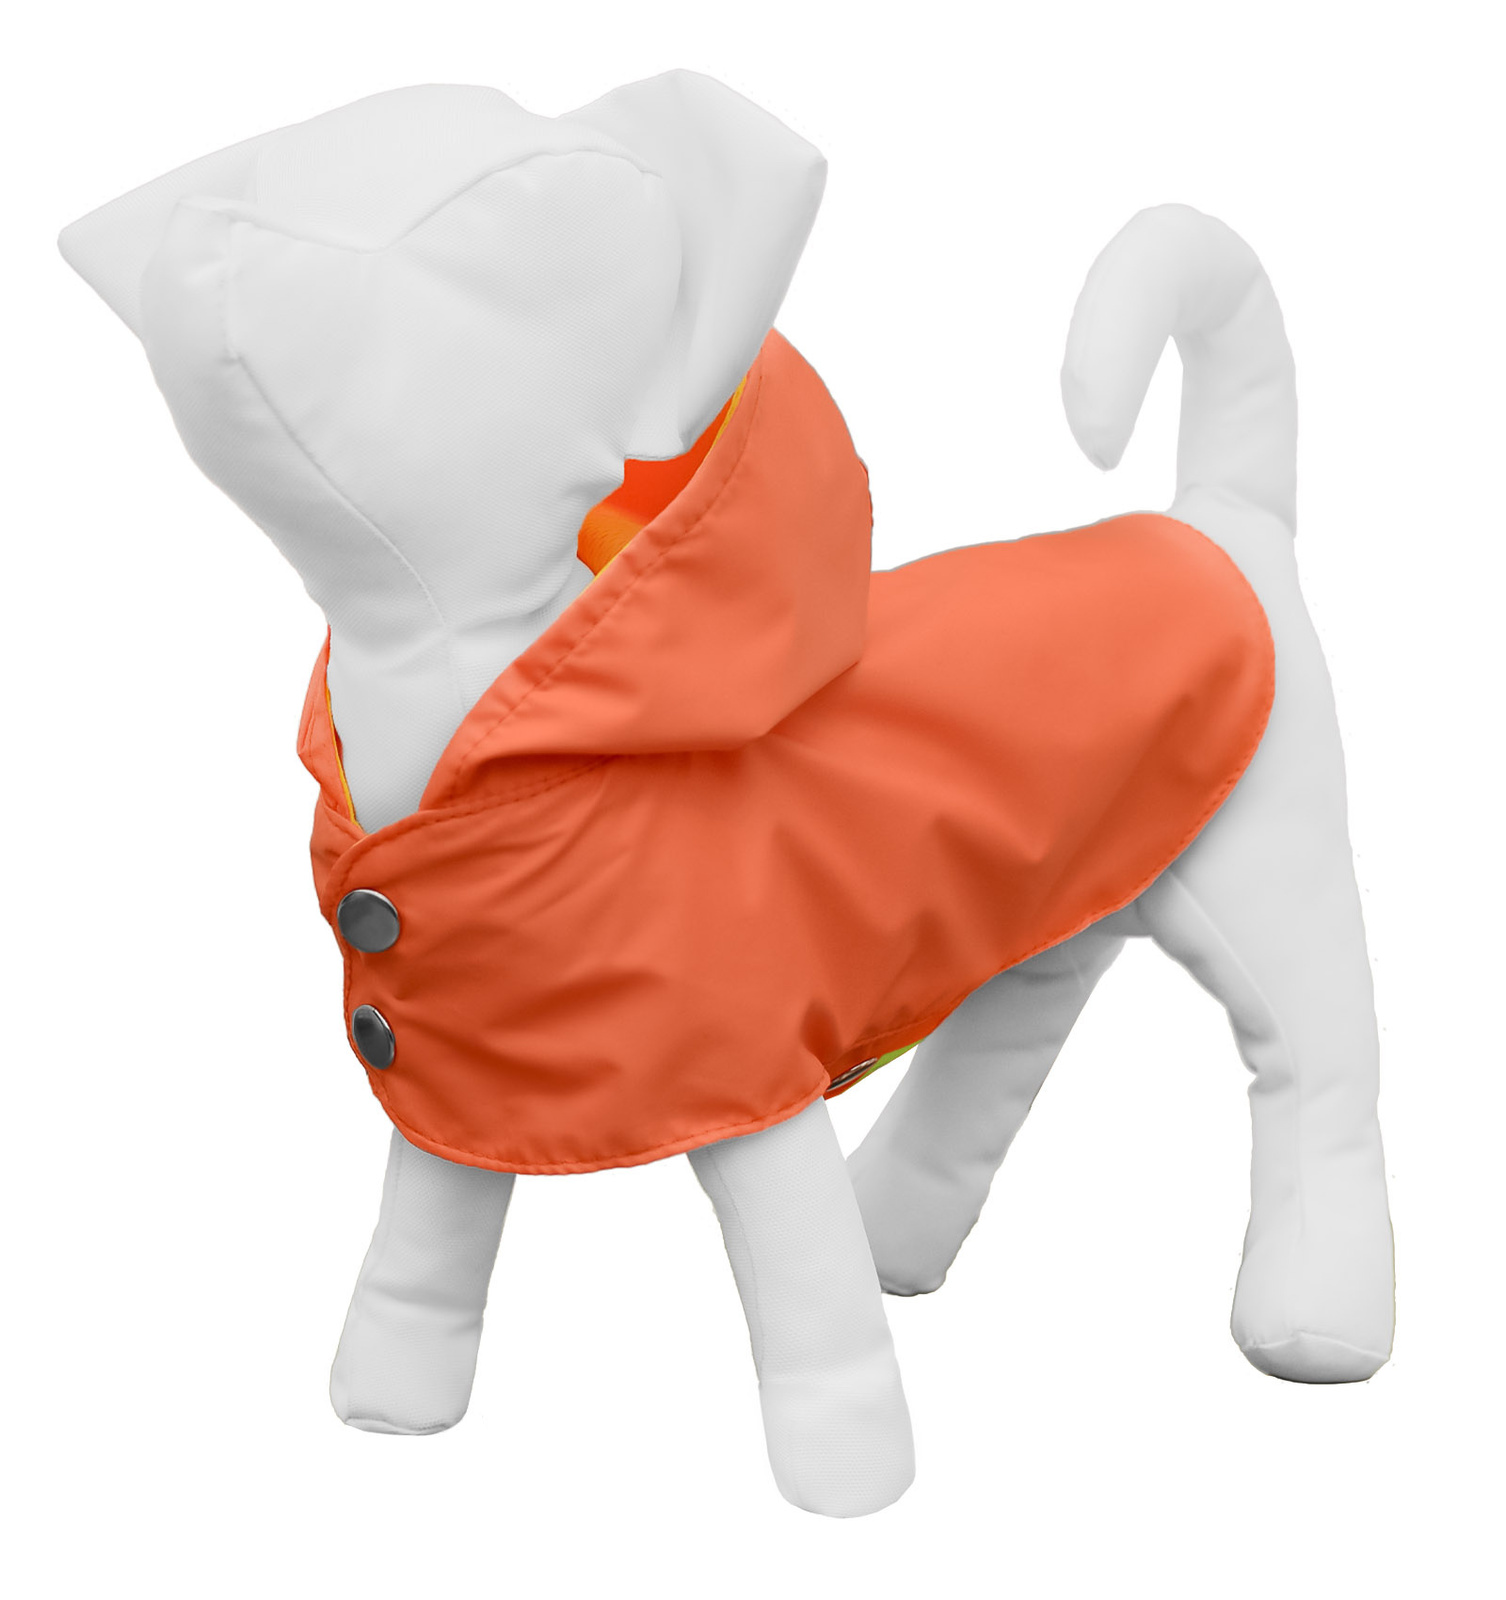 Yami-Yami одежда дождевик-плащ для собак, персиковый (S) Yami-Yami одежда дождевик-плащ для собак, персиковый (S) - фото 1